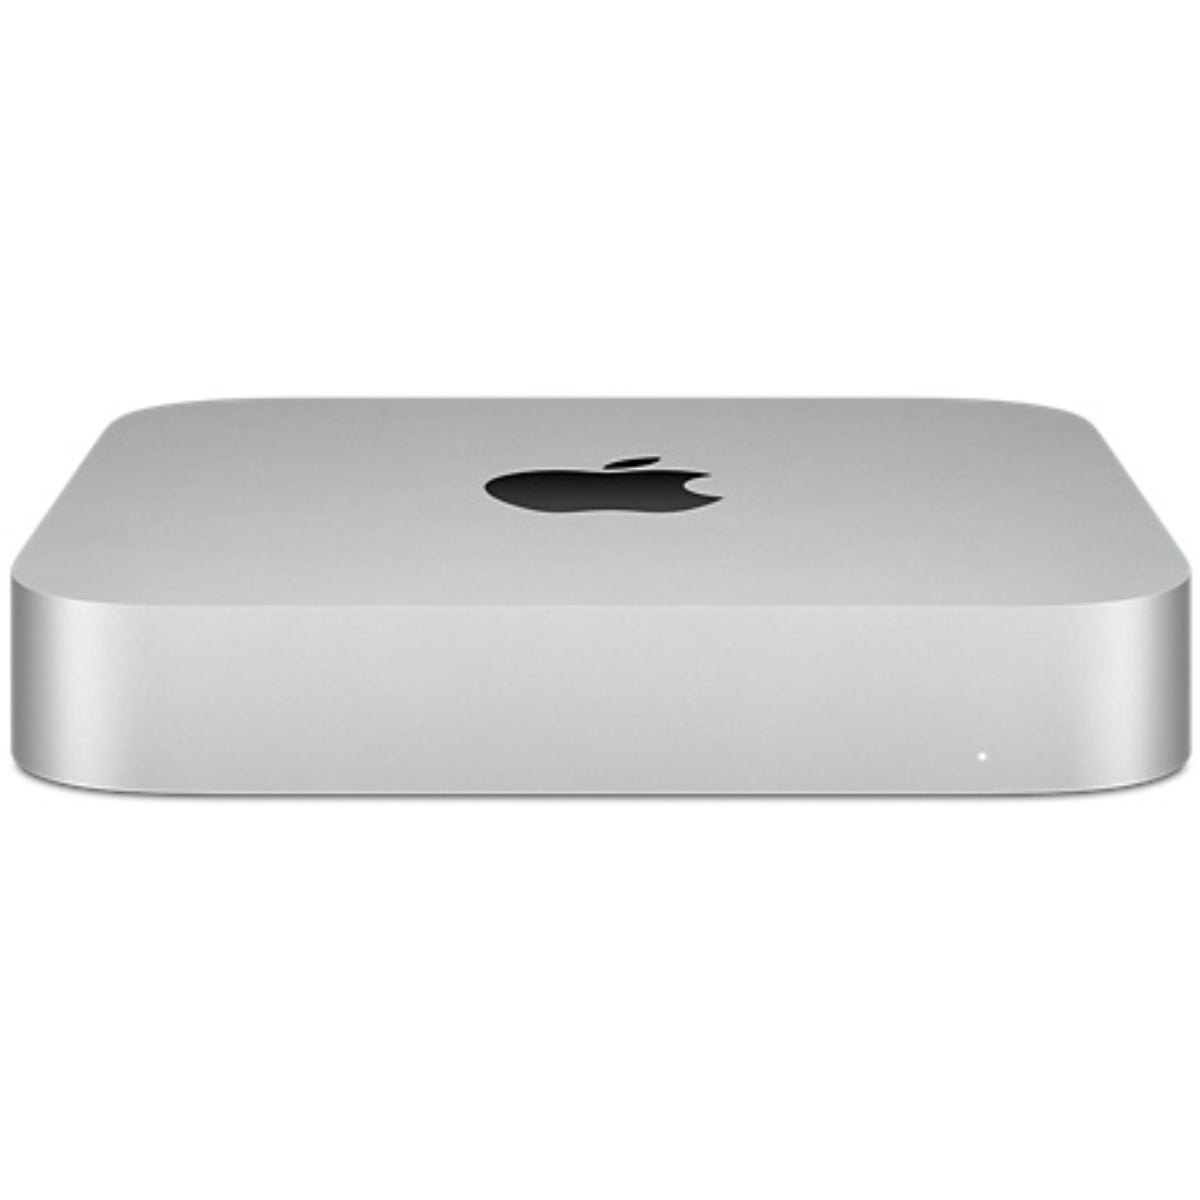 Mac Mini: Apple M1 Chip with 8-Core CPU and 8-Core GPU, 256GB SSD